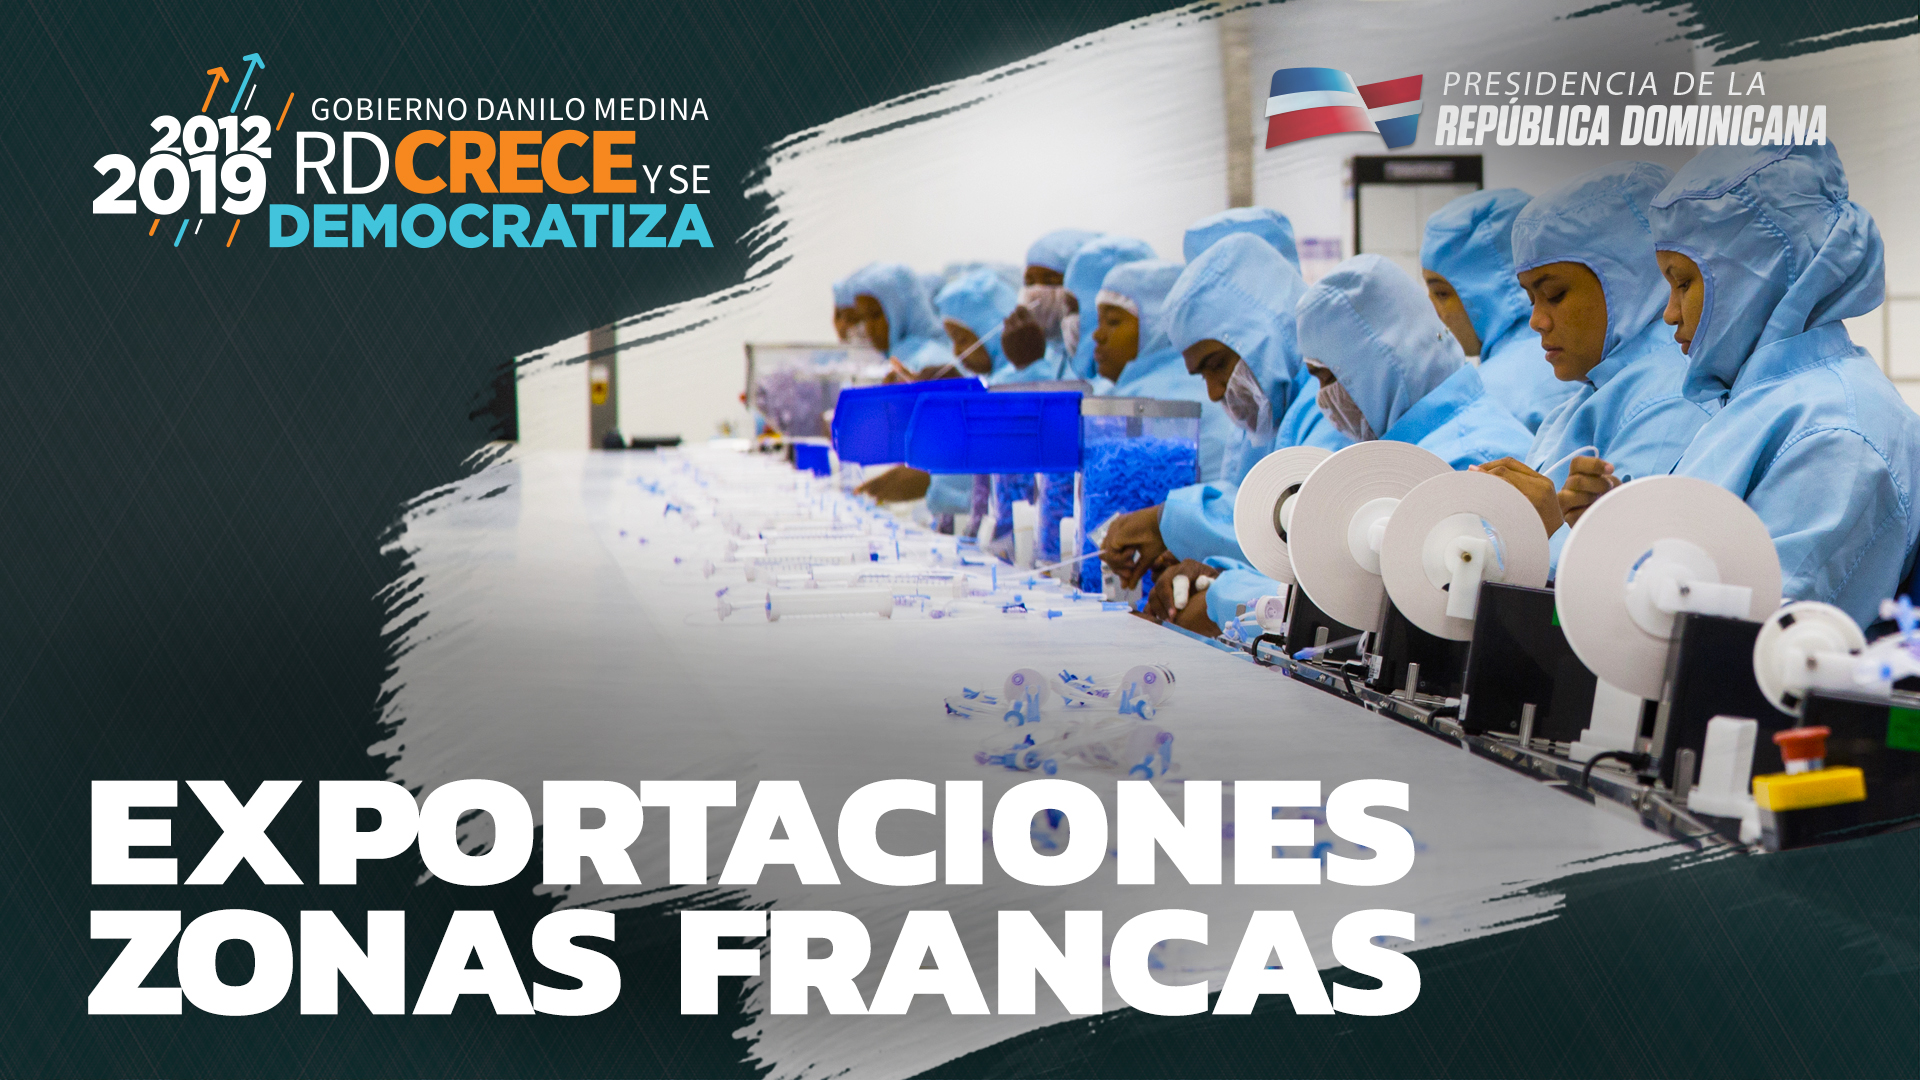 REPÚBLICA DOMINICANA: En solo siete años, RD relanza Zonas Francas y obtiene liderazgo regional en generación empleos, empresas y exportaciones